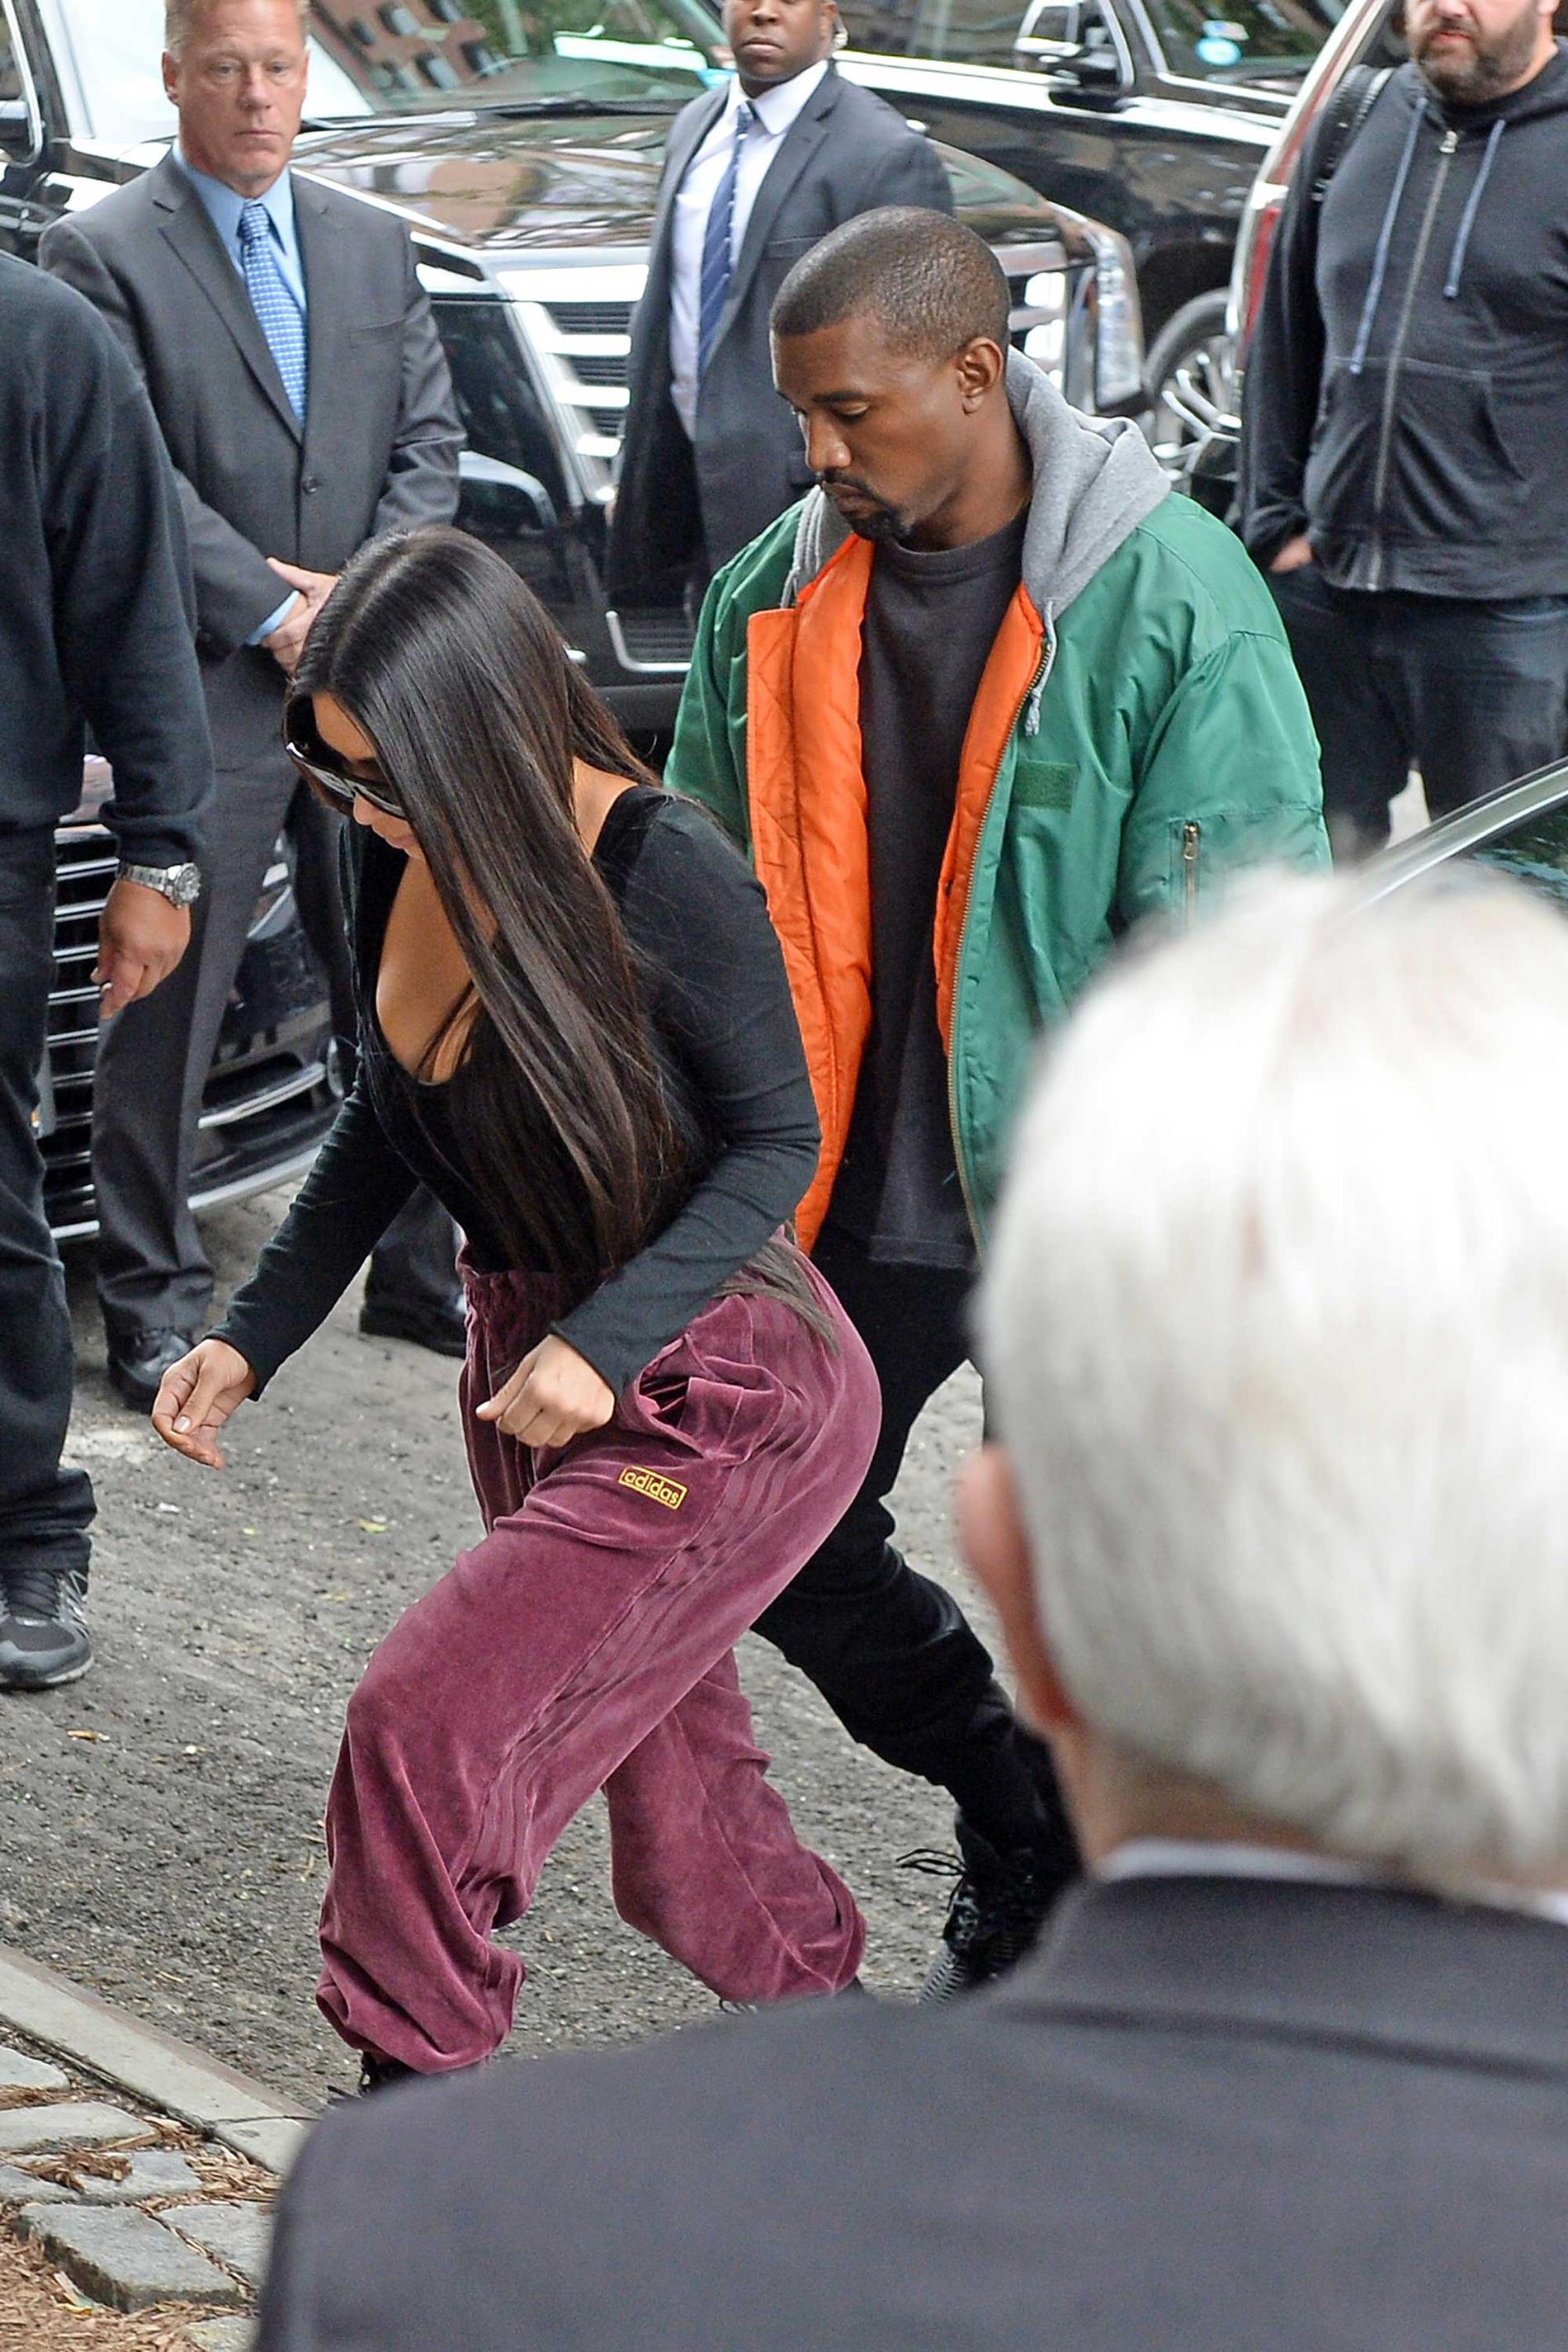 Kim Kardashian möttes av sin man Kanye West när hon lanadade i New York efter att ha flytt Paris i en privatjet.